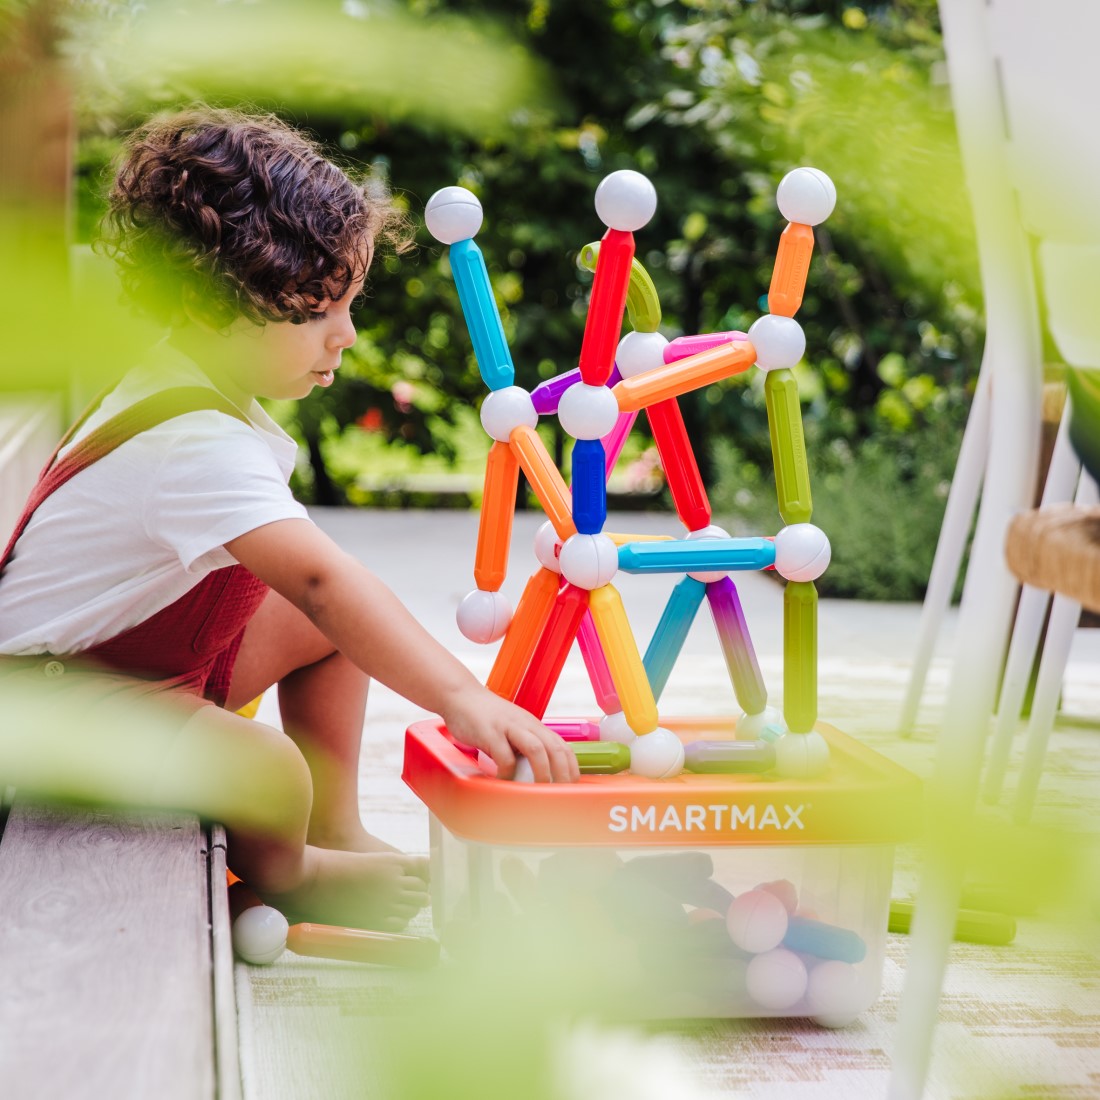 SmartMax  Les jouets magnétiques sont-ils sûrs pour les enfants en bas âge  ?